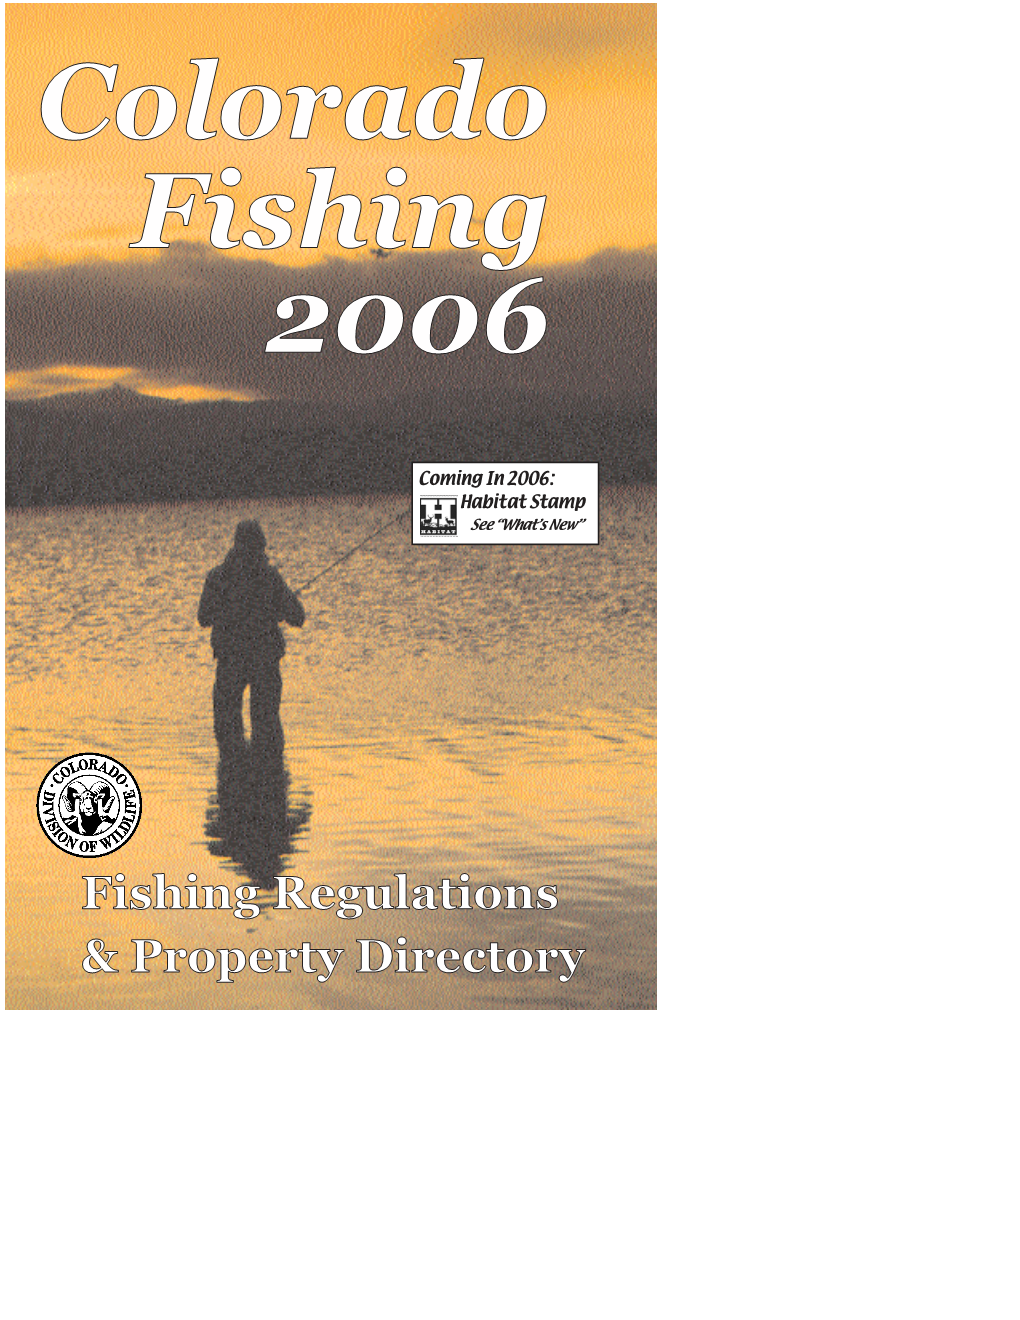 Colorado Fishing 2006